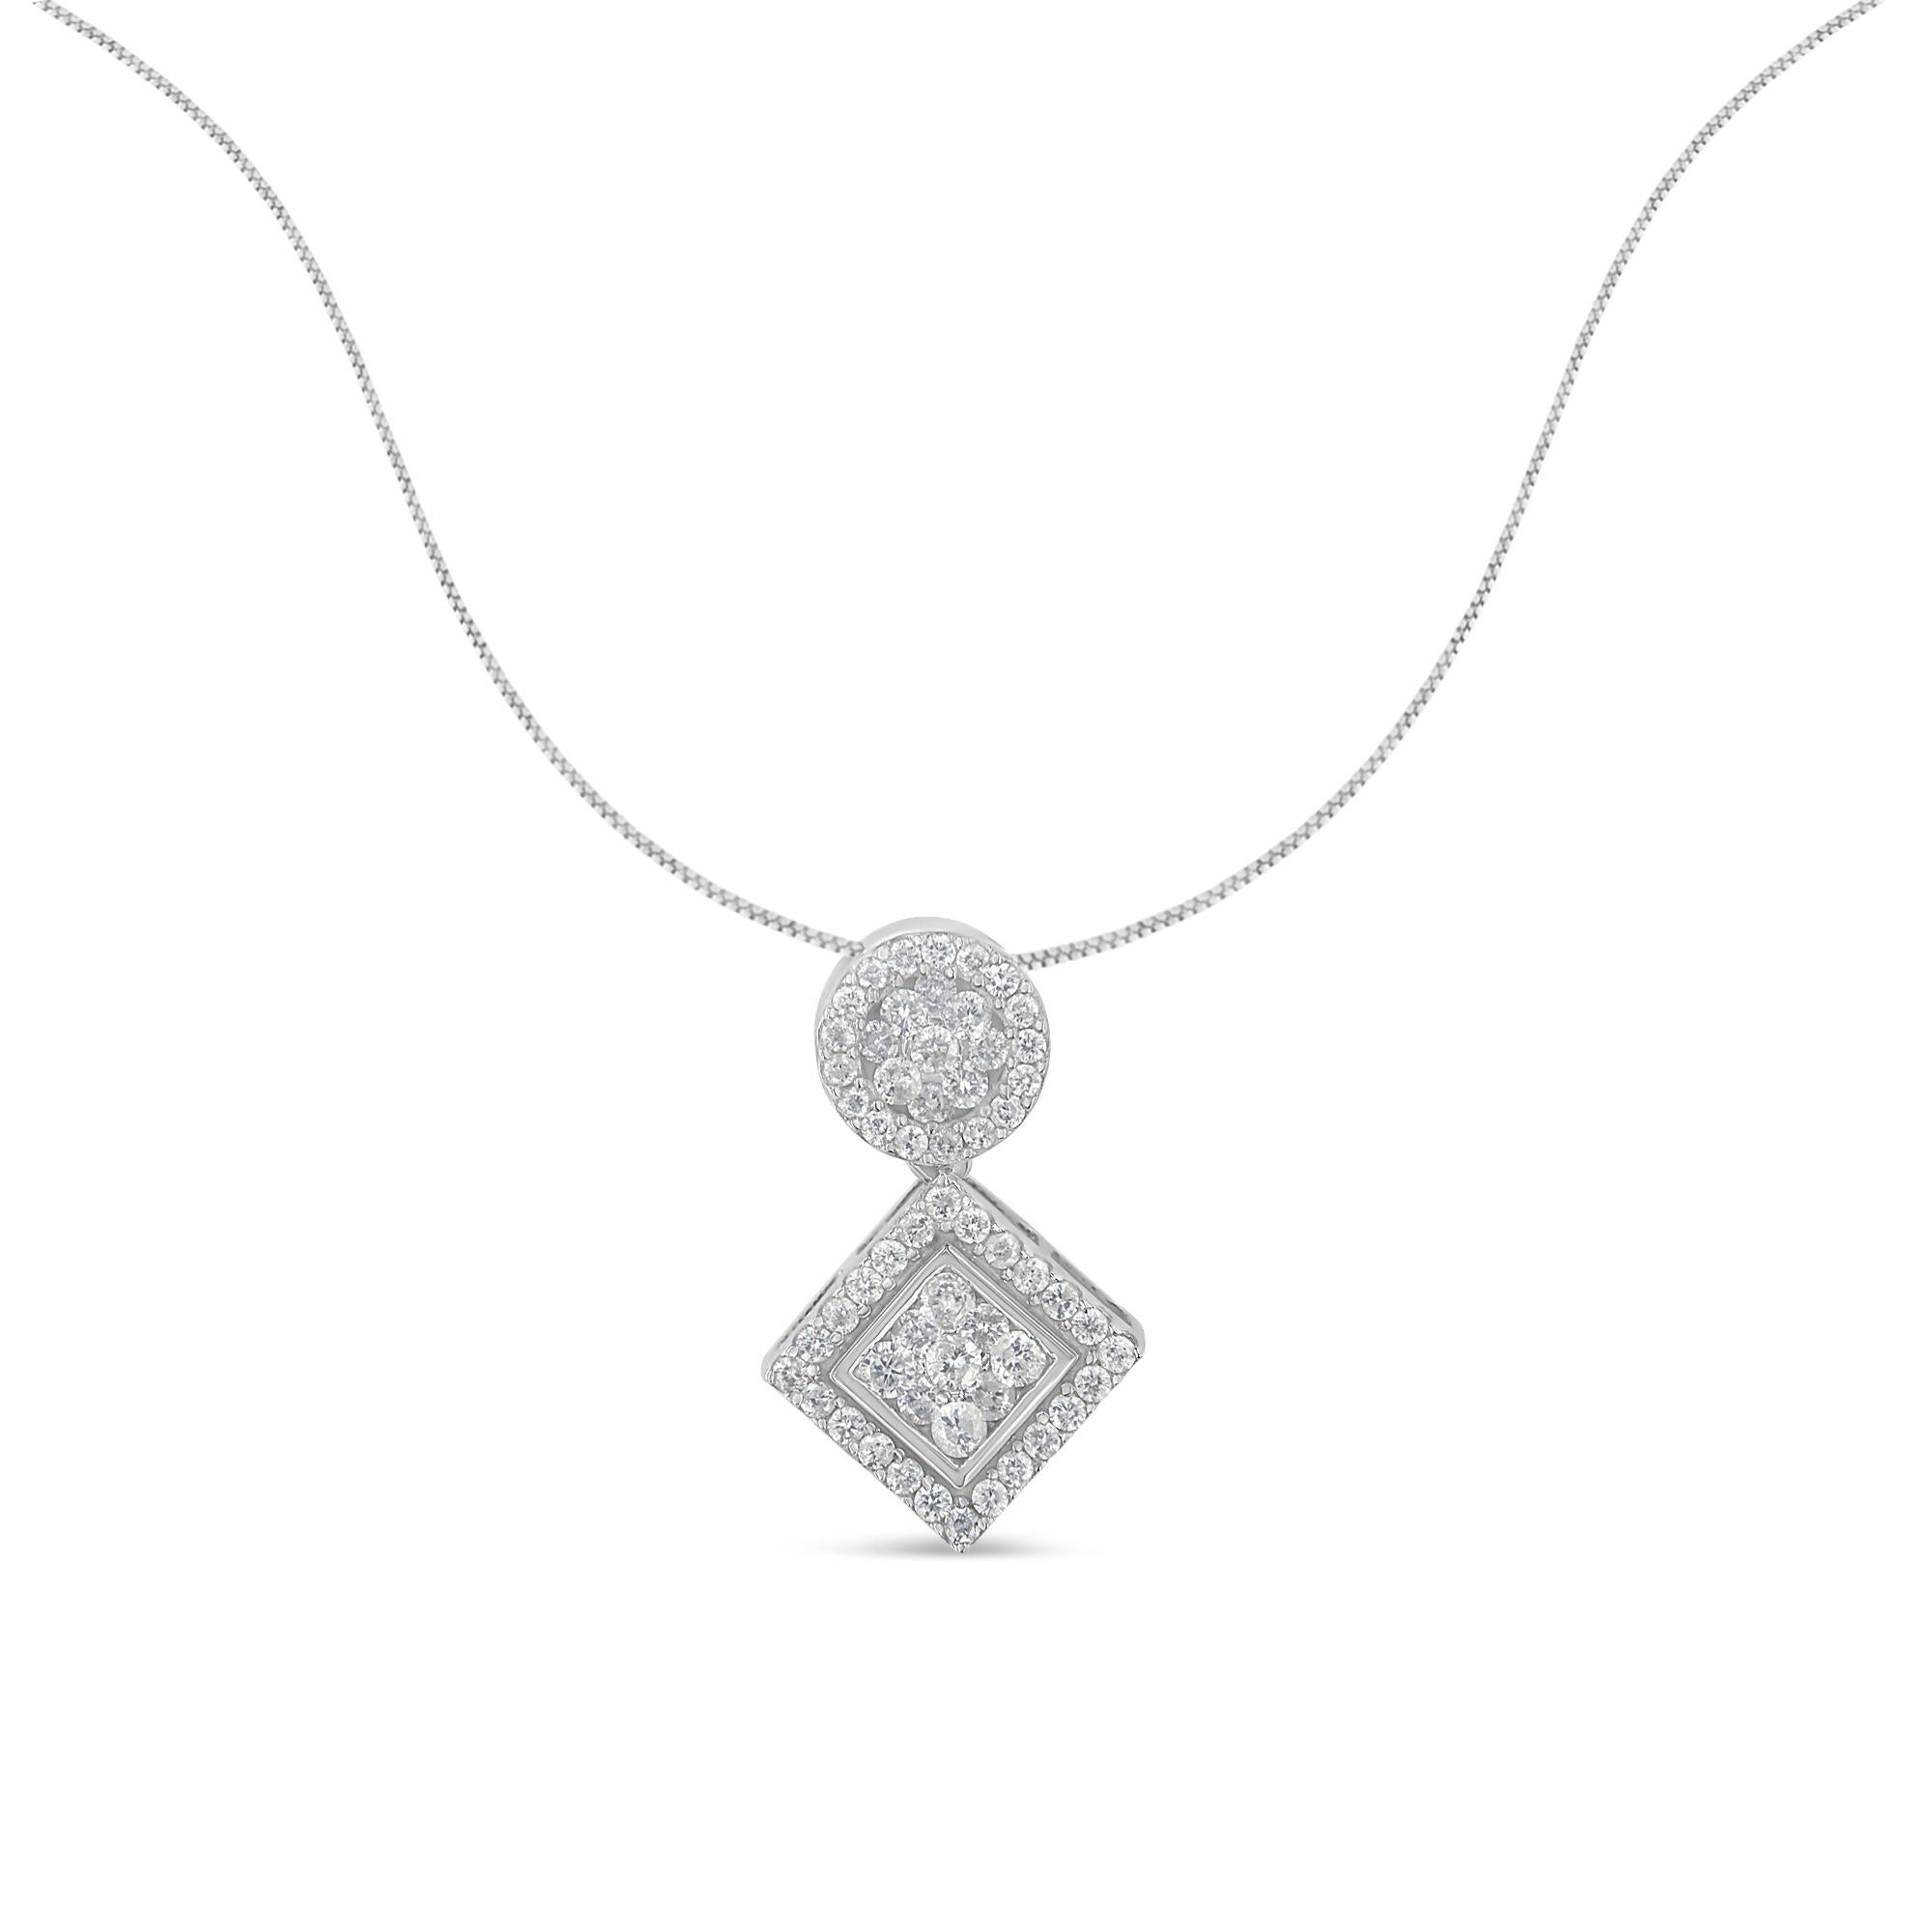 Un collier à pendentif en diamant présentant un design géométrique avec une grappe de diamants ronds et carrés. Ce collier remarquable est fabriqué en or blanc 14 carats et contient un poids total de diamants de 1 carat. Ce magnifique collier